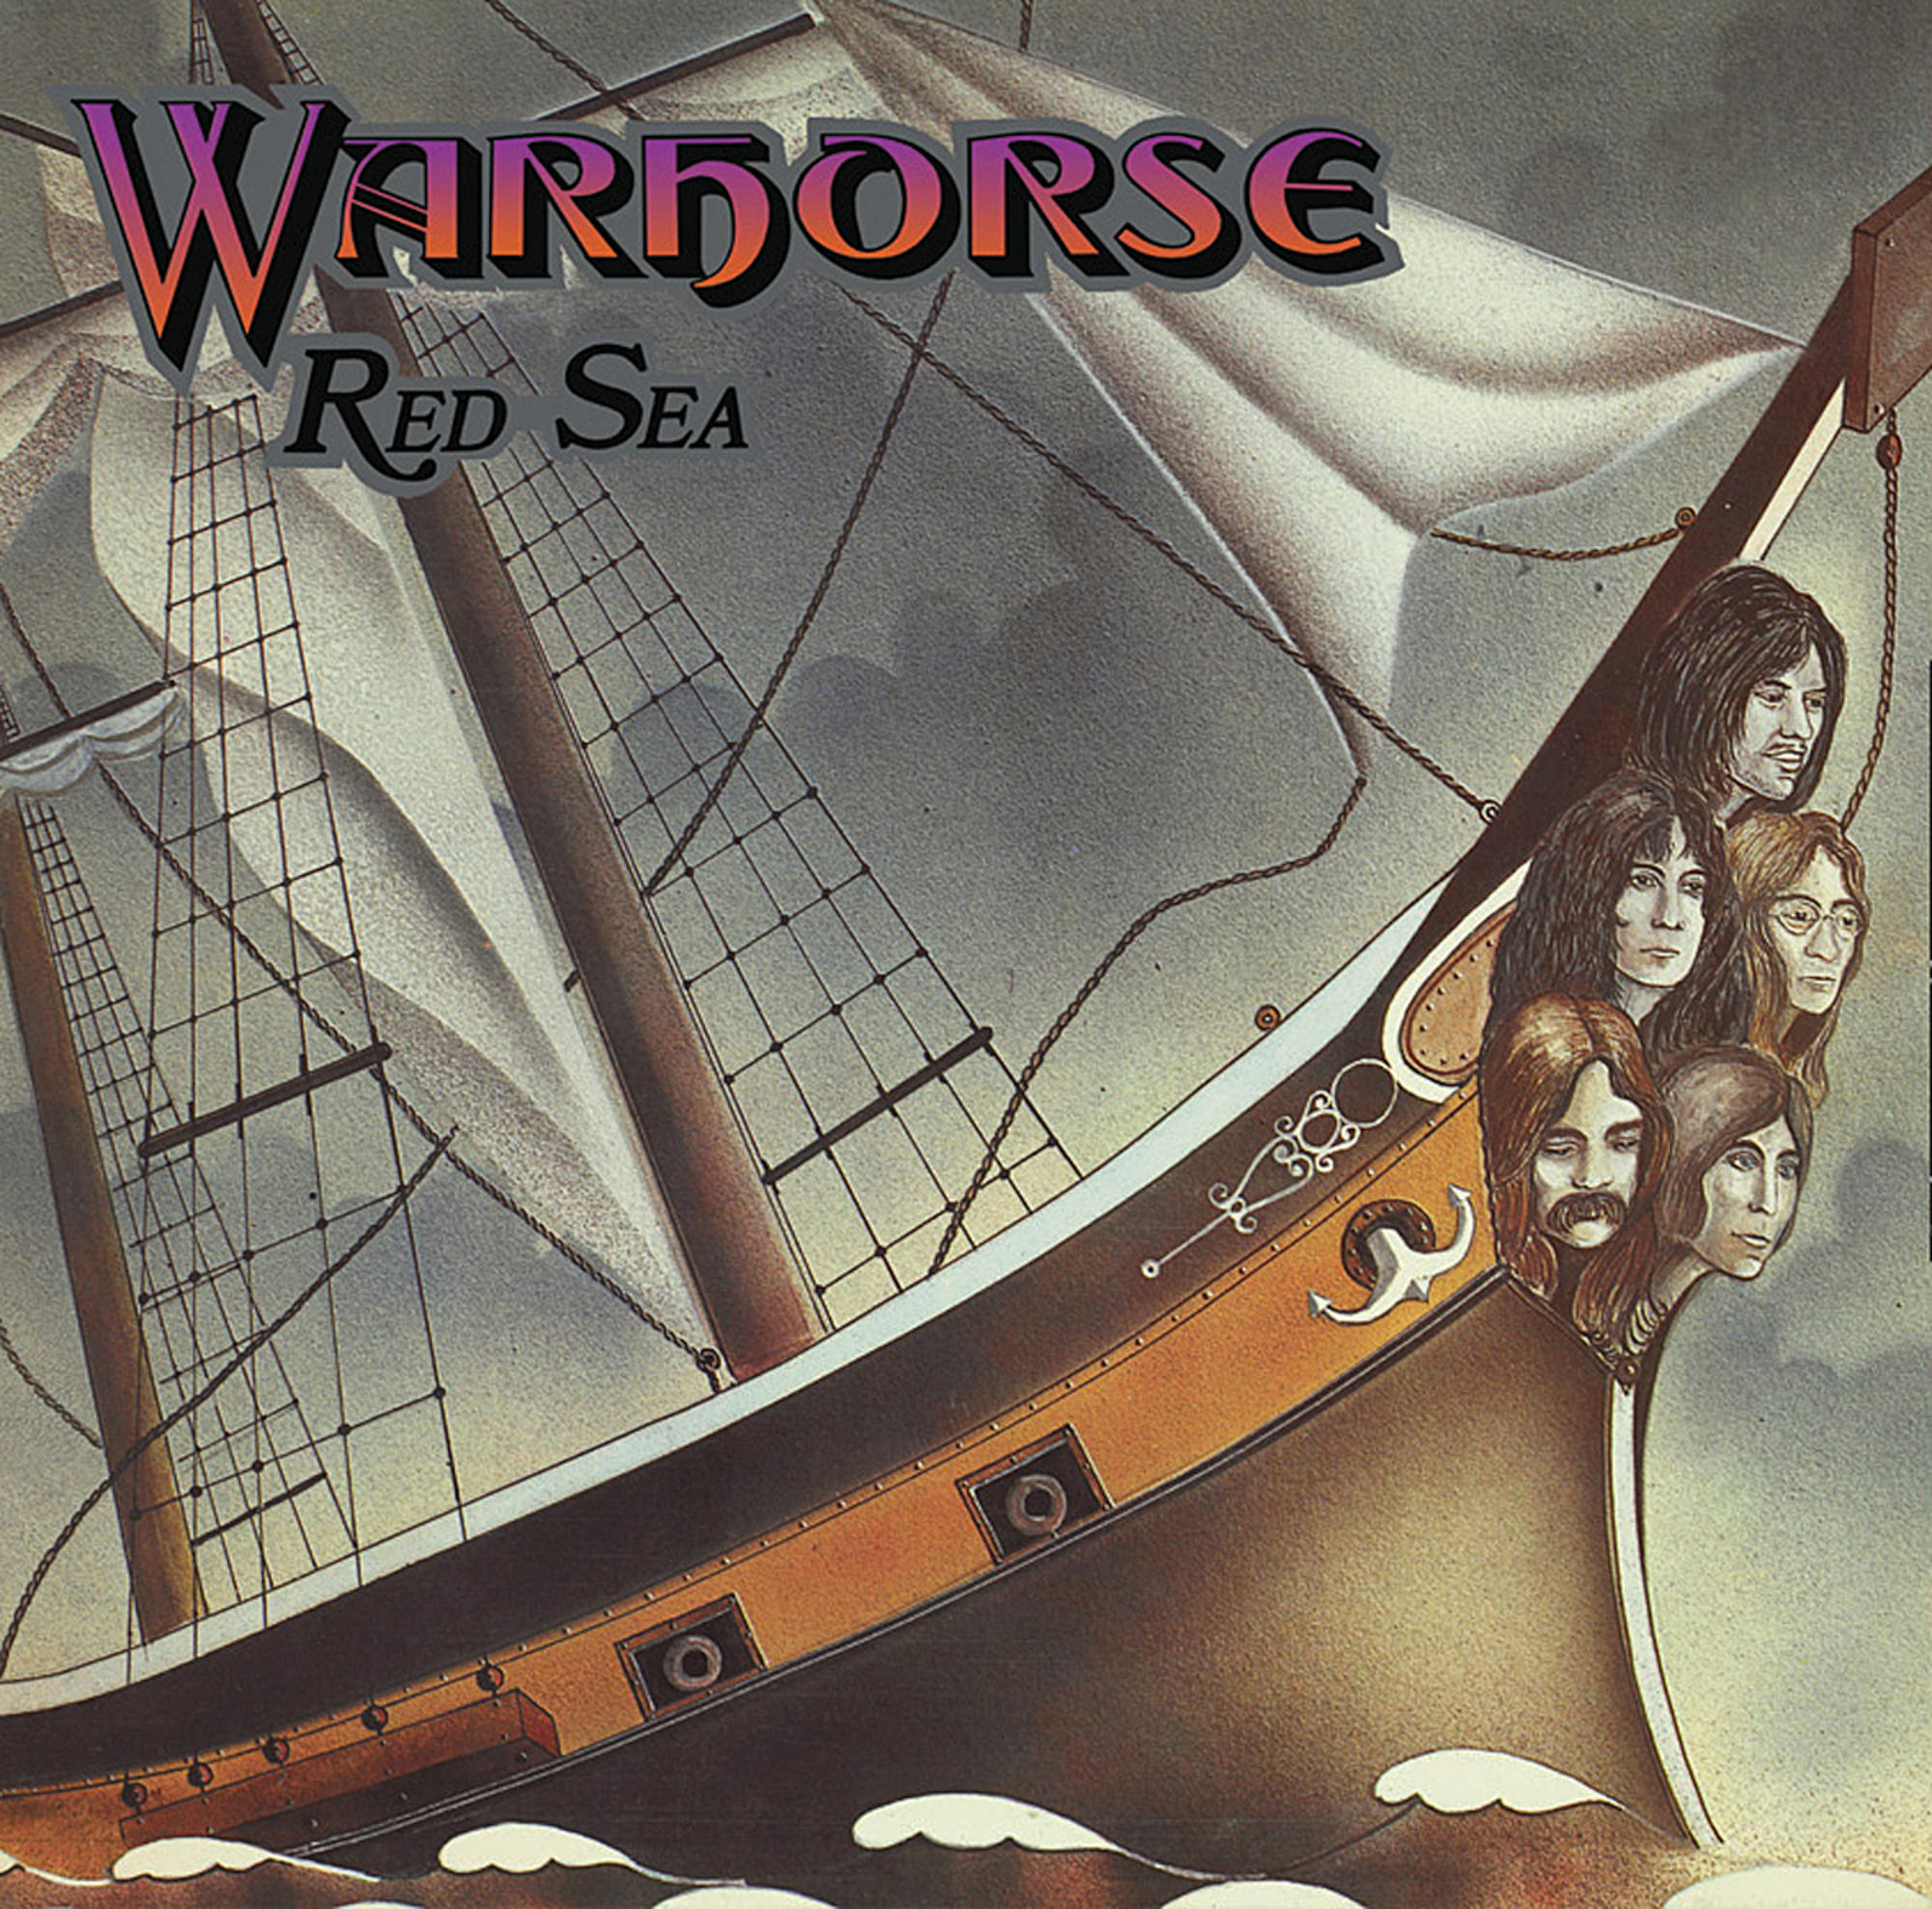 - (Vinyl) SEA Warhorse - RED